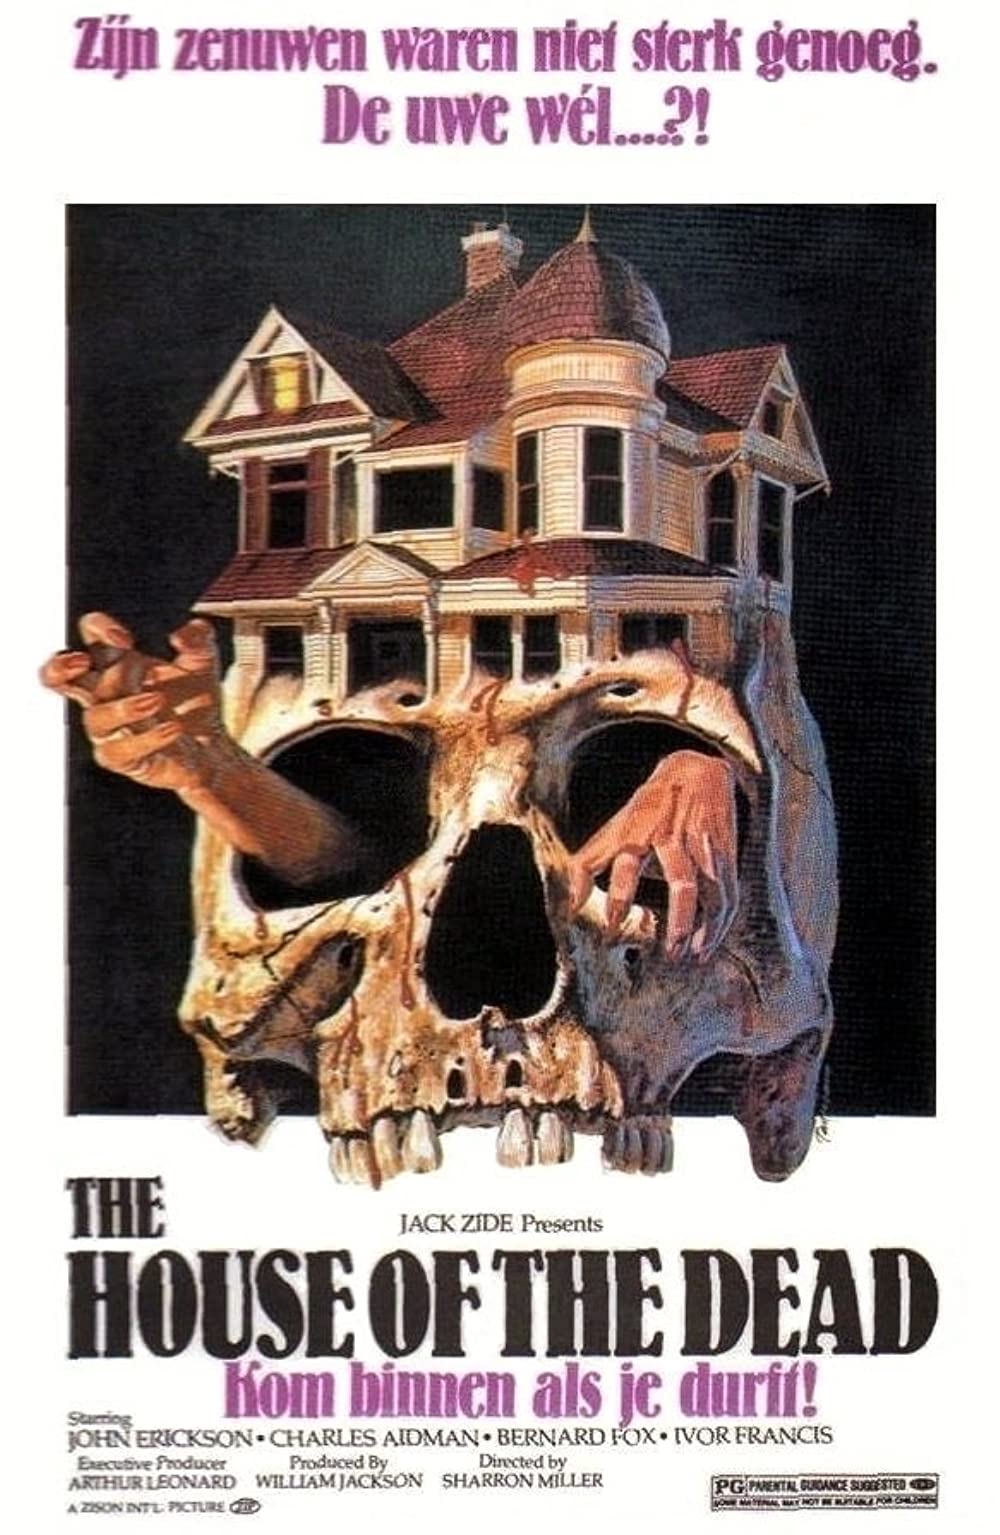 Filmbeschreibung zu The House of the Dead